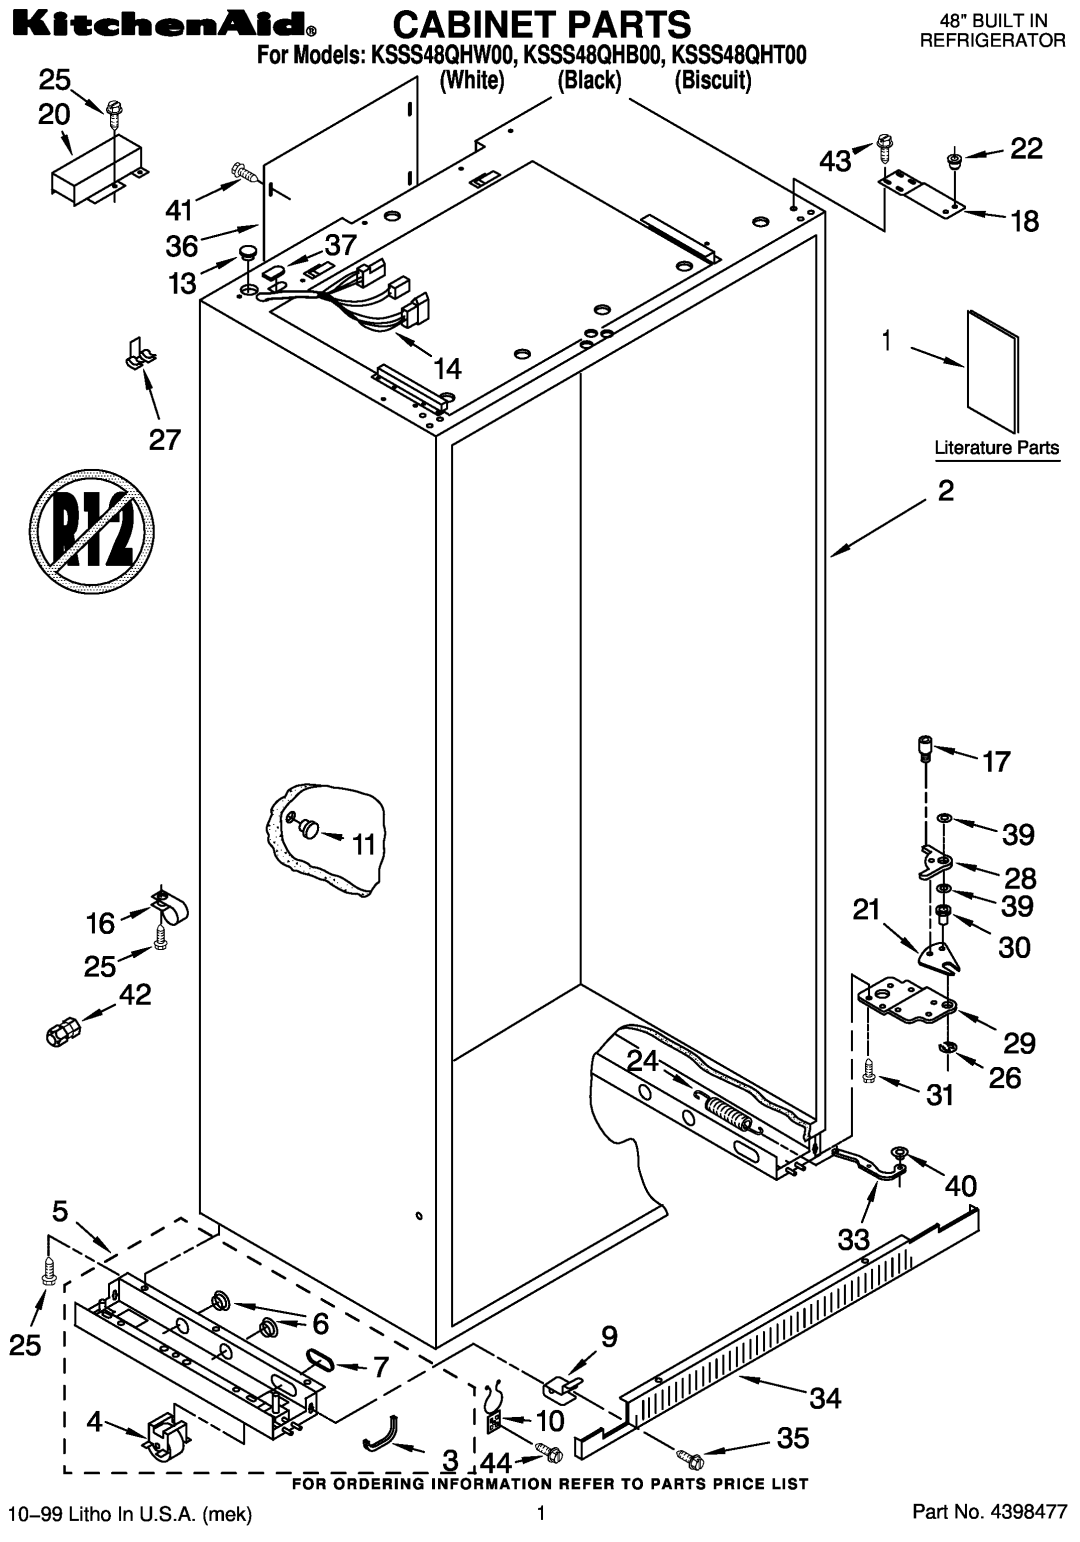 KitchenAid manual Cabinet Parts, For Models KSSS48QHW00, KSSS48QHB00, KSSS48QHT00 White Black Biscuit 